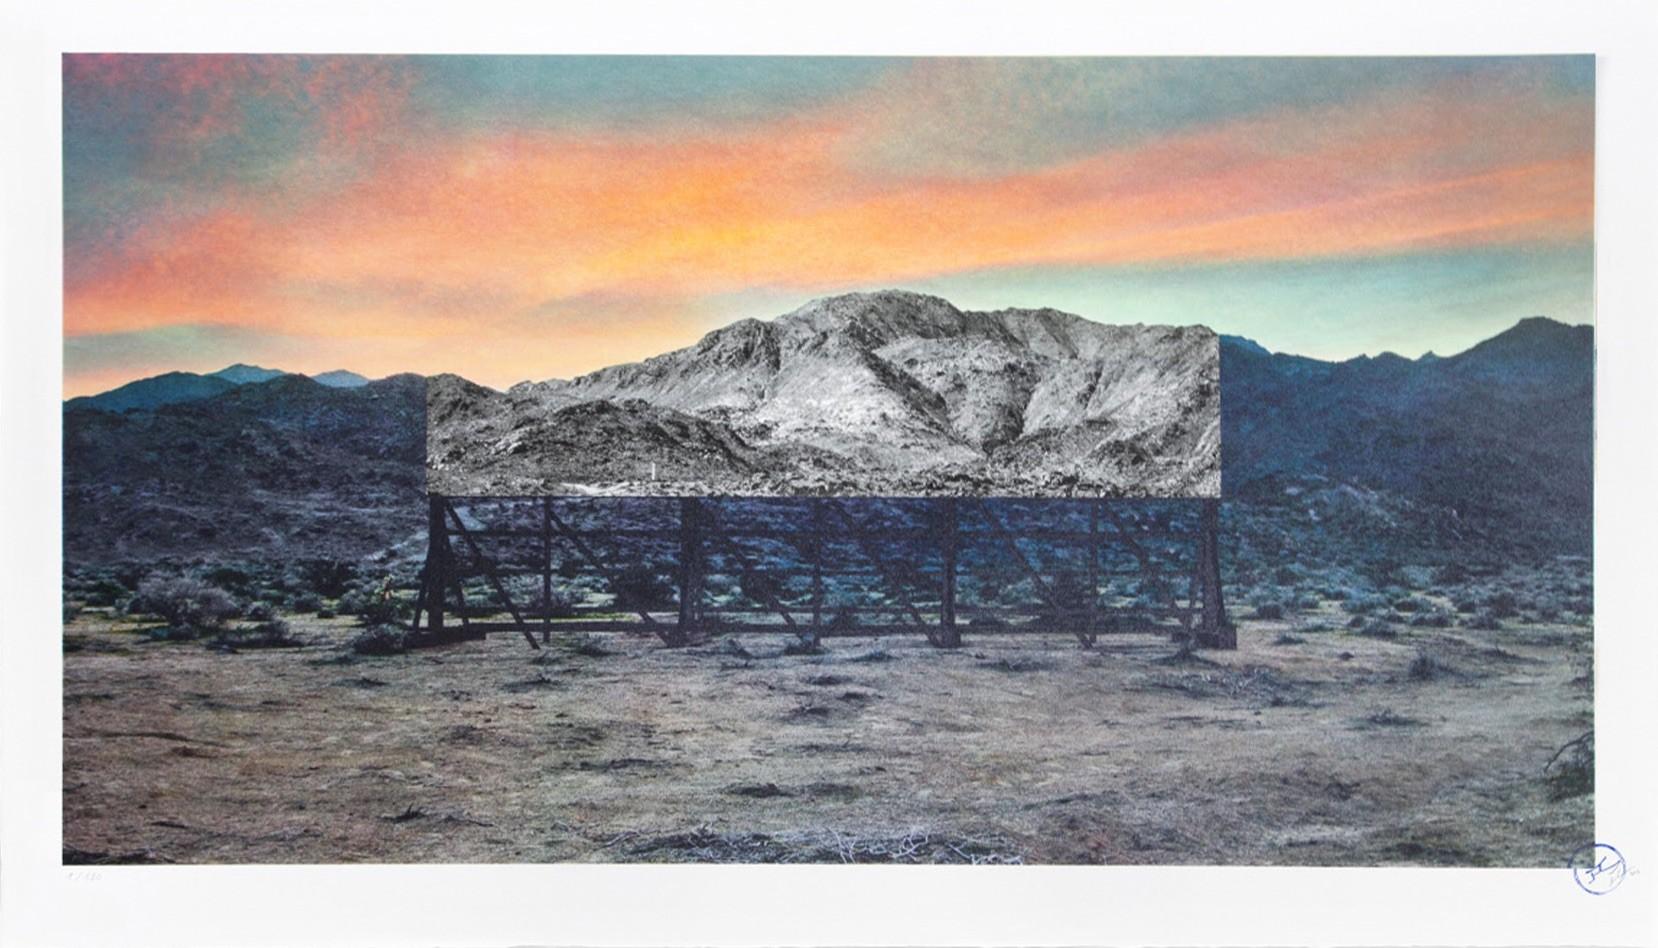 Trompe l'oeil, Death Valley, Billboard, March 4, 2017, 5:41 pm, California, USA - Print by JR artist